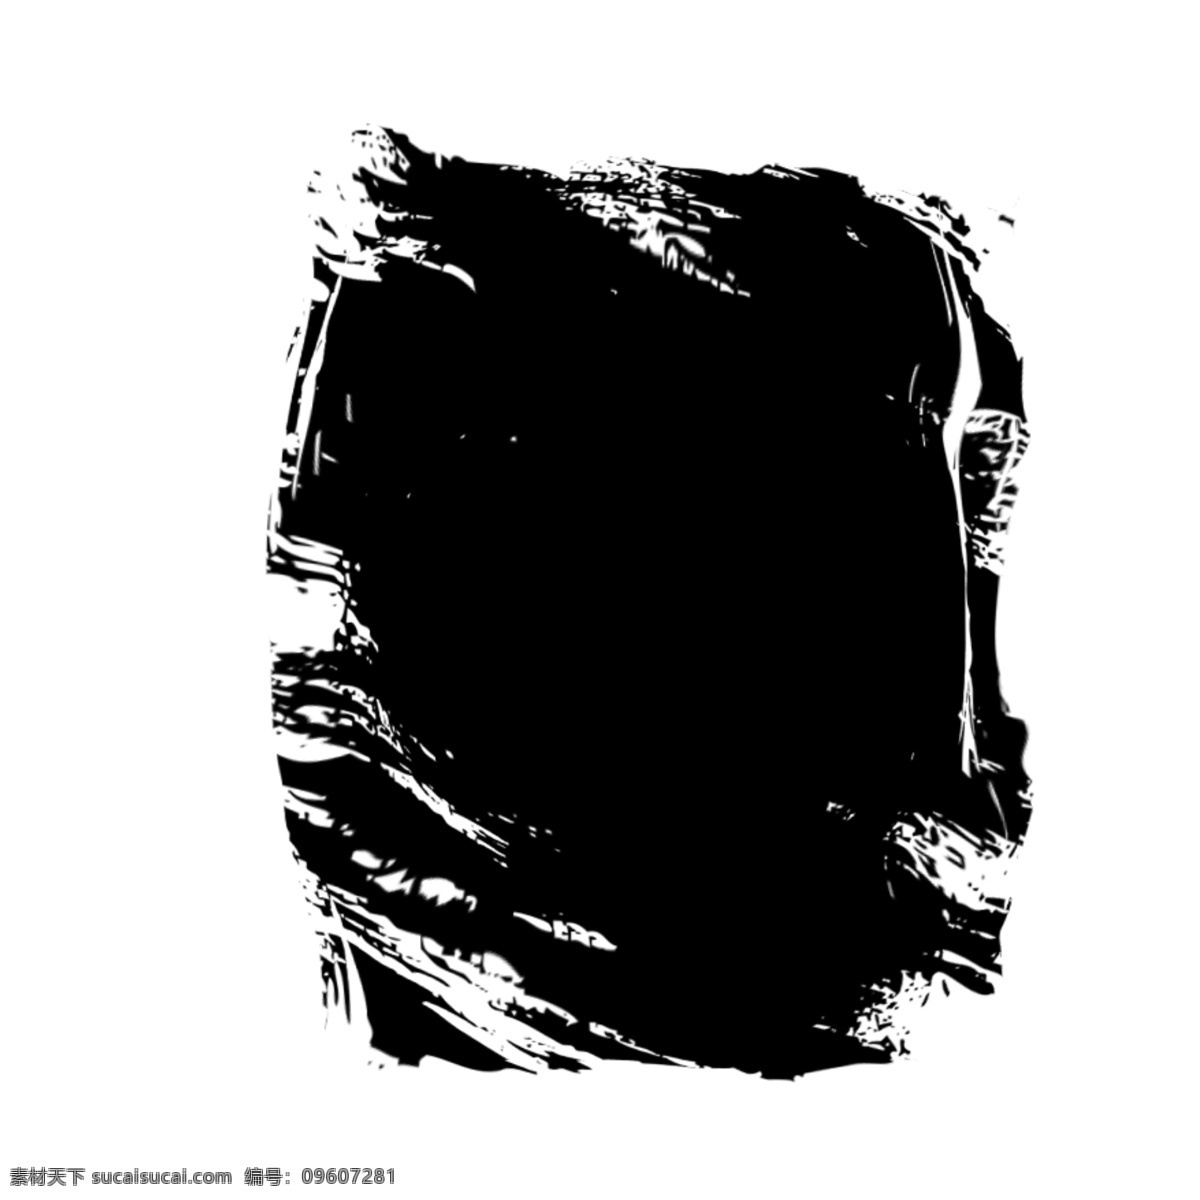 水彩 黑色 不规则 洞口 卡通 创意 抽象 水墨 泼墨 手绘 新意 漂浮 个性 挥洒 无底洞